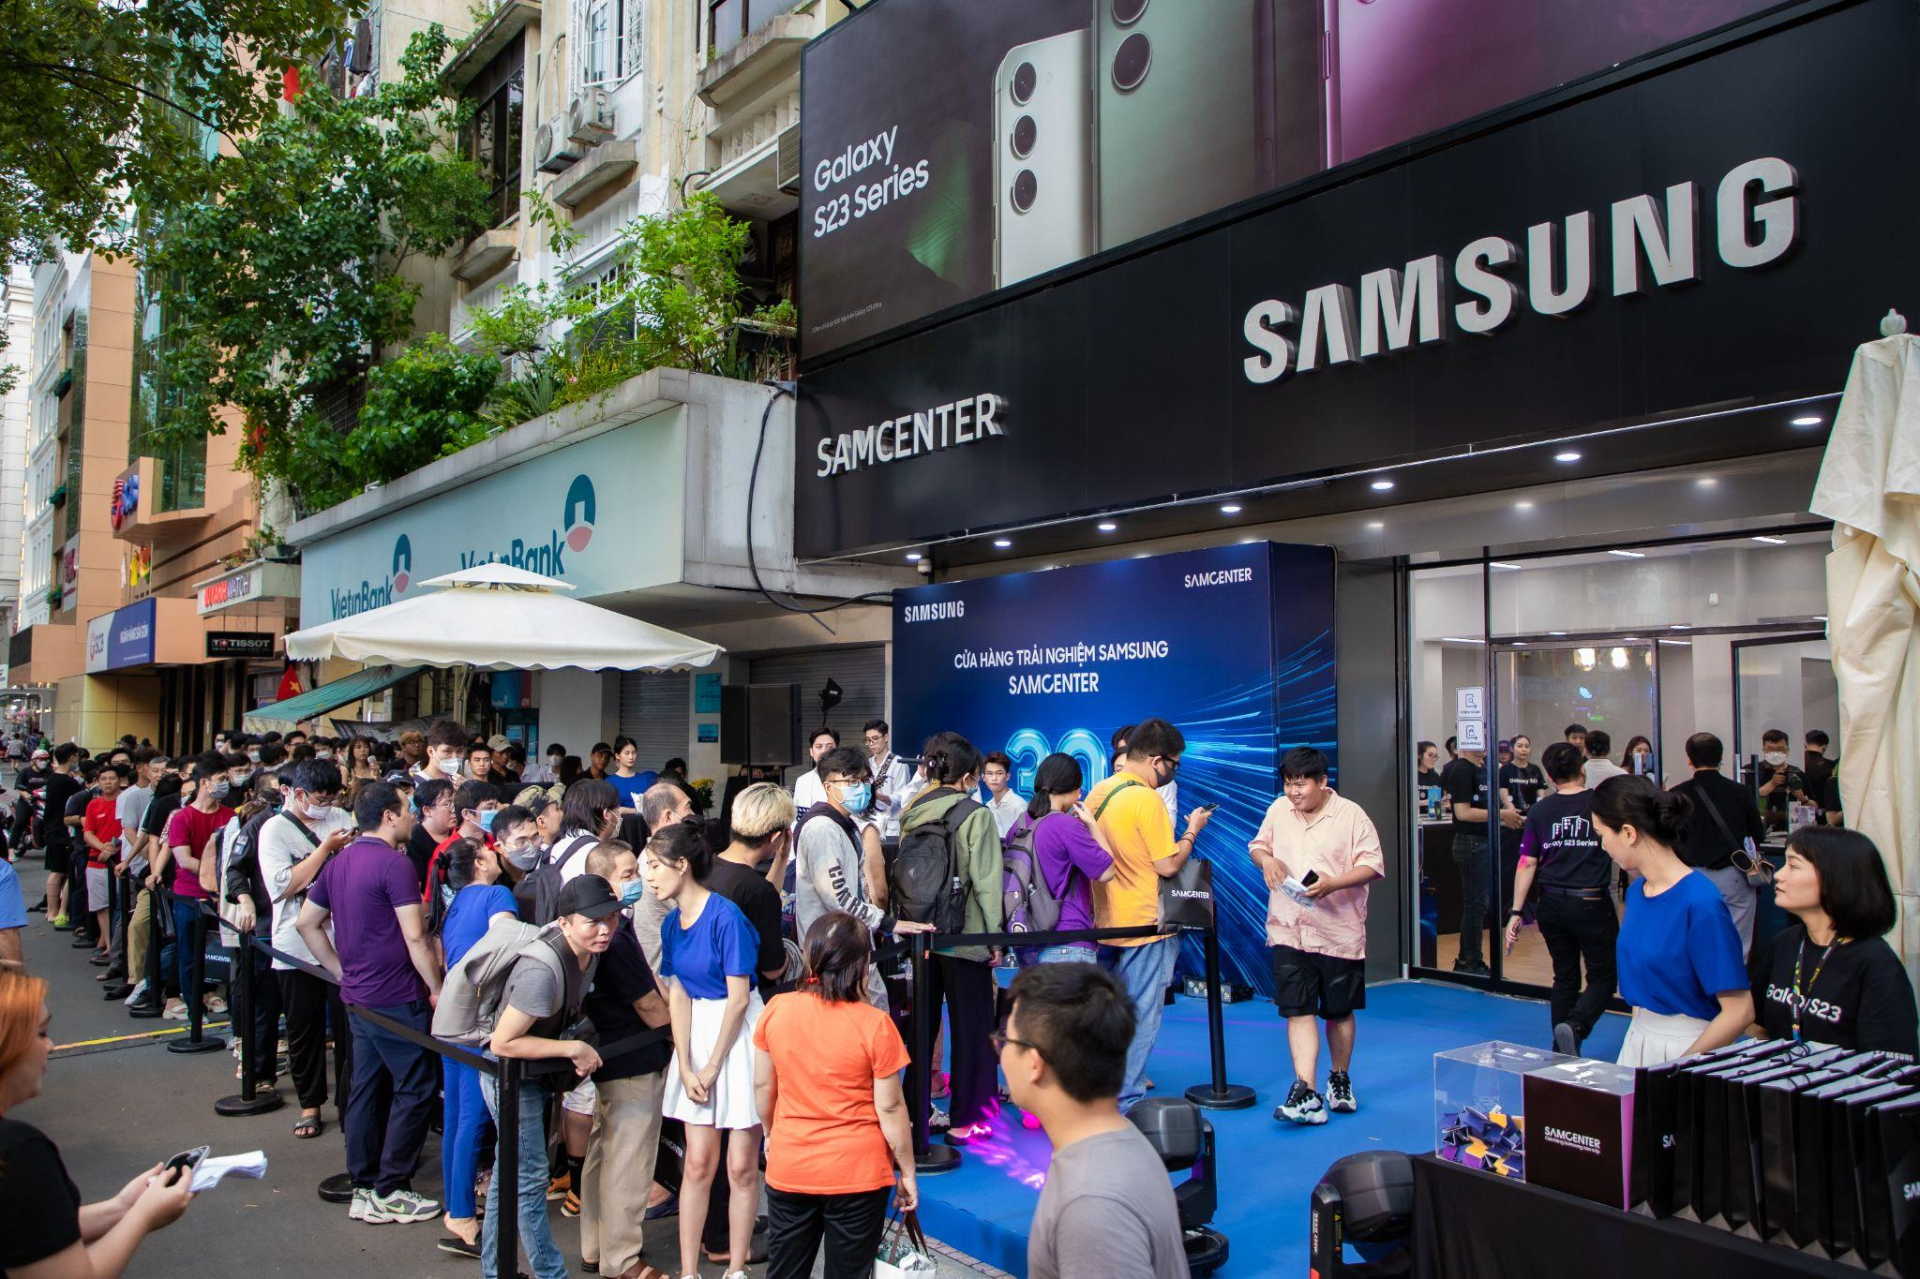 Giới trẻ say đắm với không gian công nghệ tại cửa hàng trải nghiệm Samsung SamCenter thứ 30 - ảnh 1